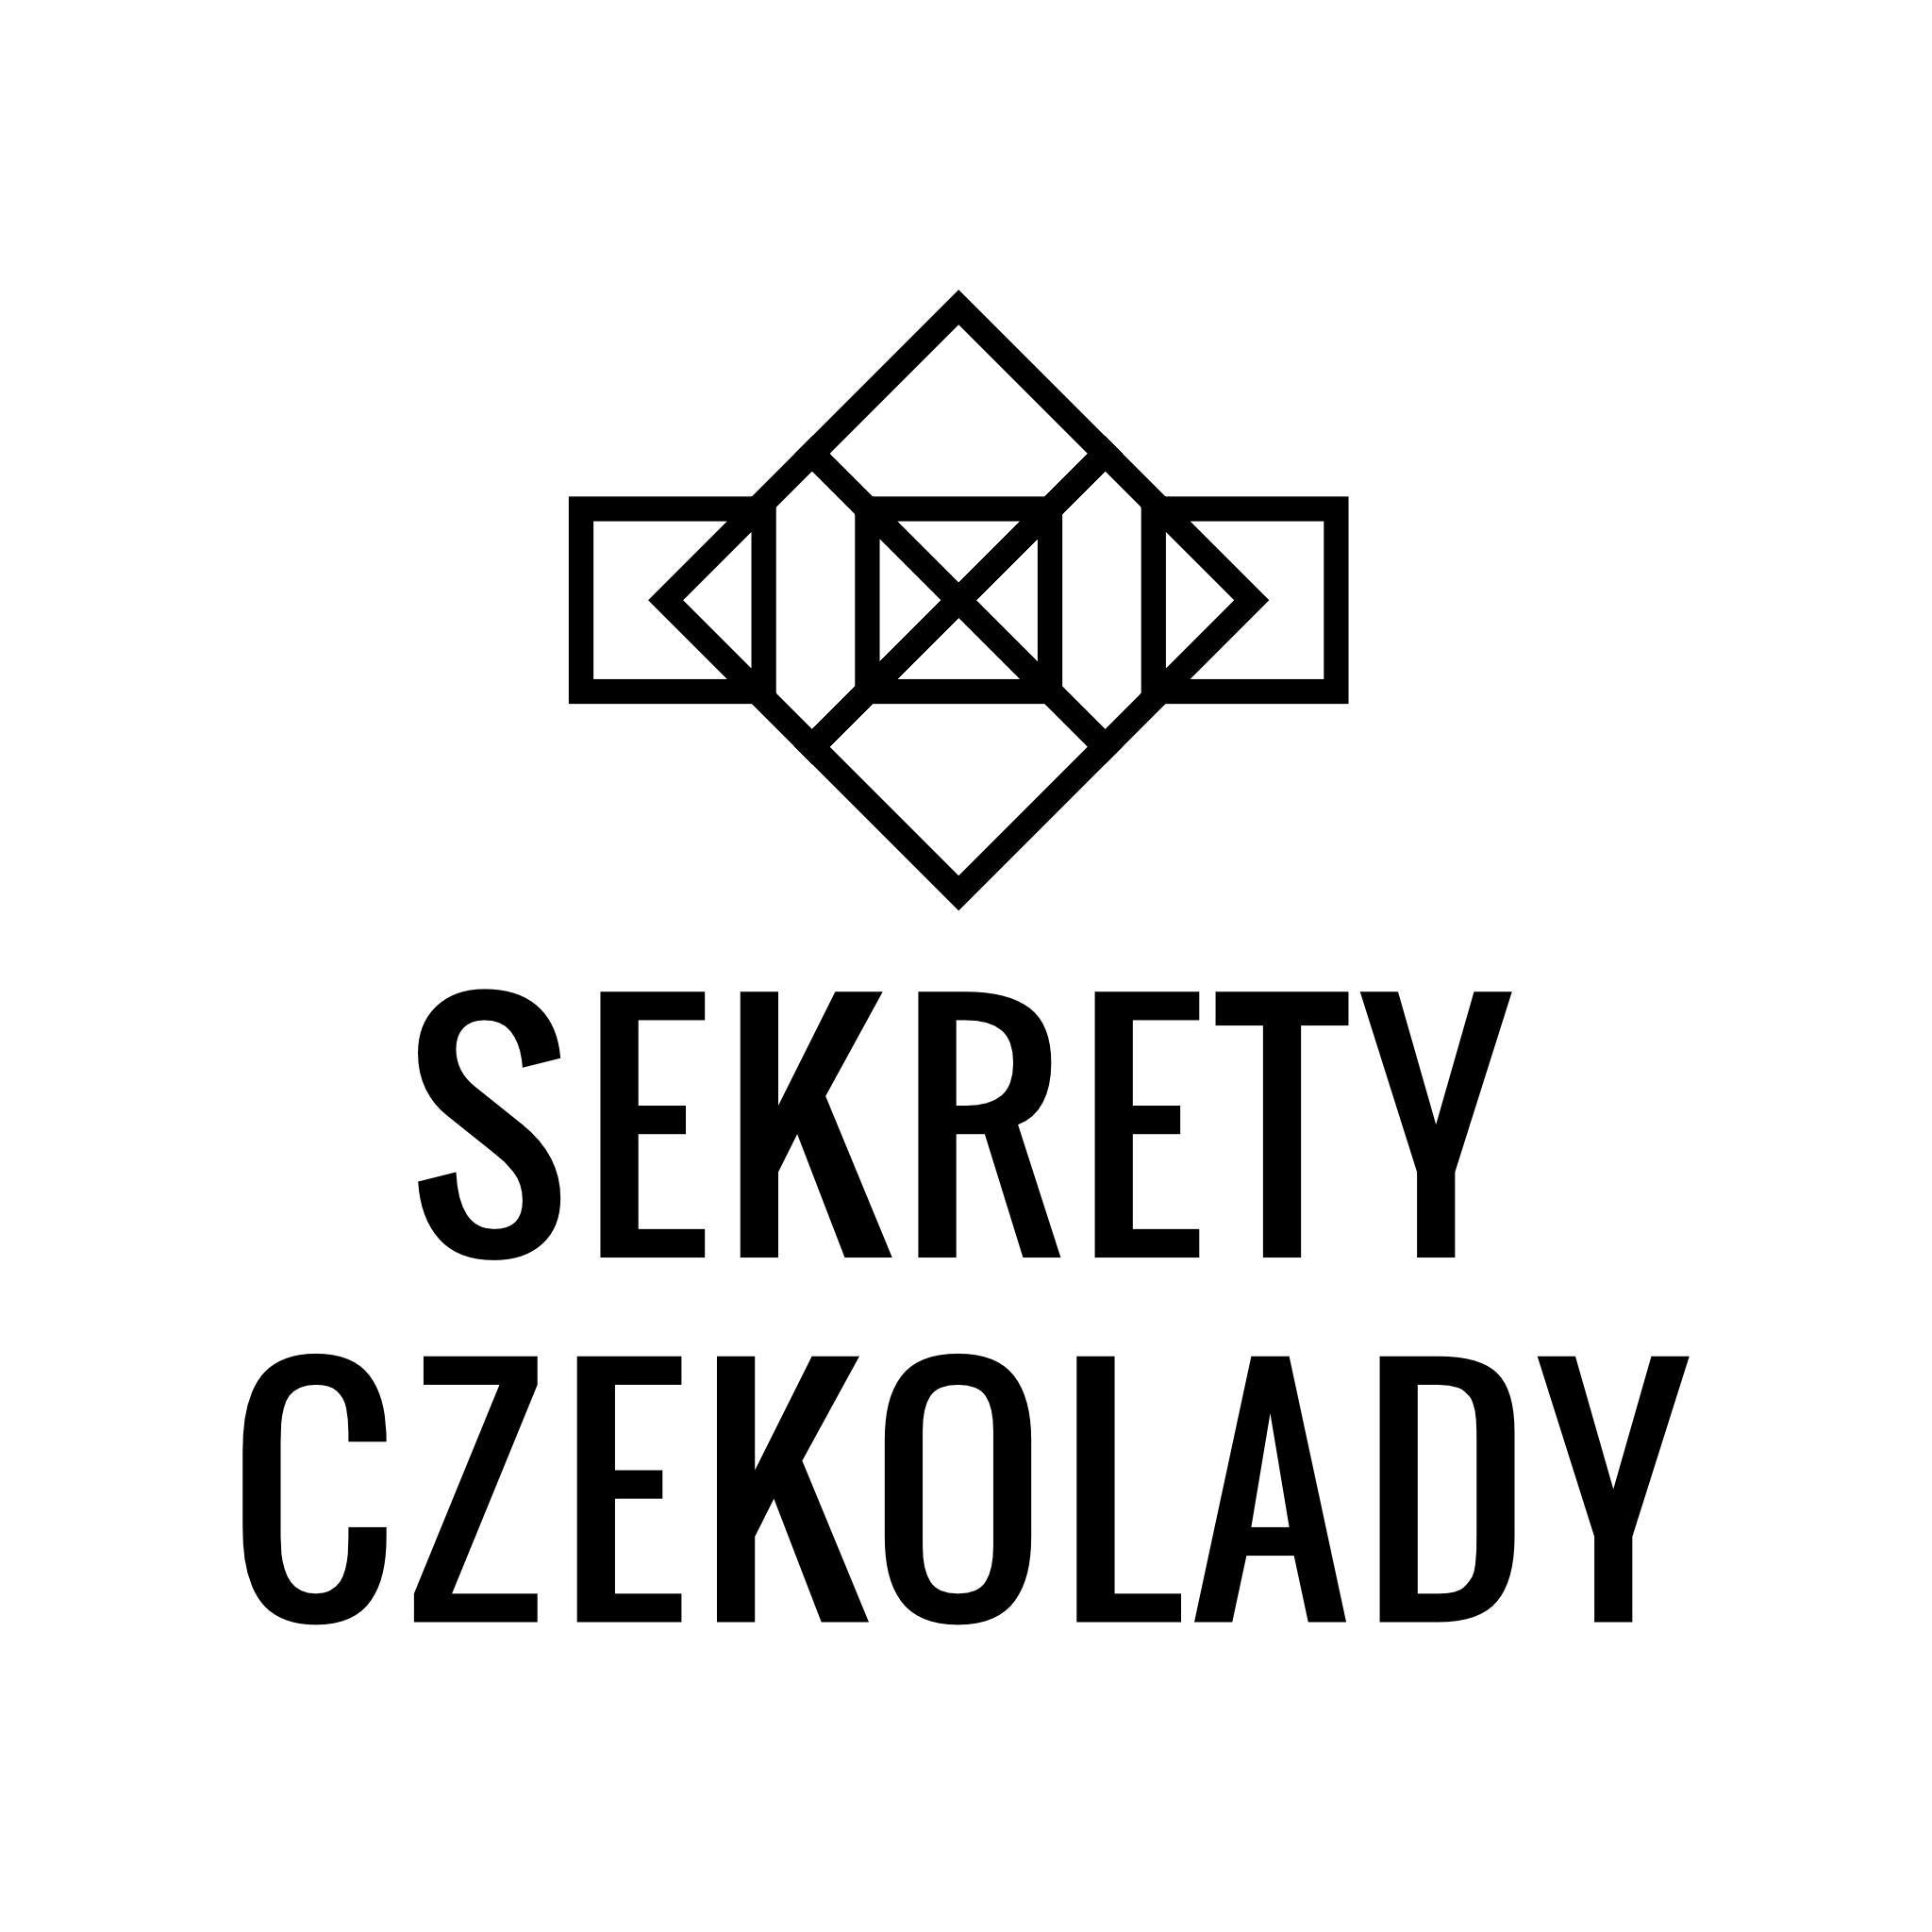 Sekrety Czekolady - logo